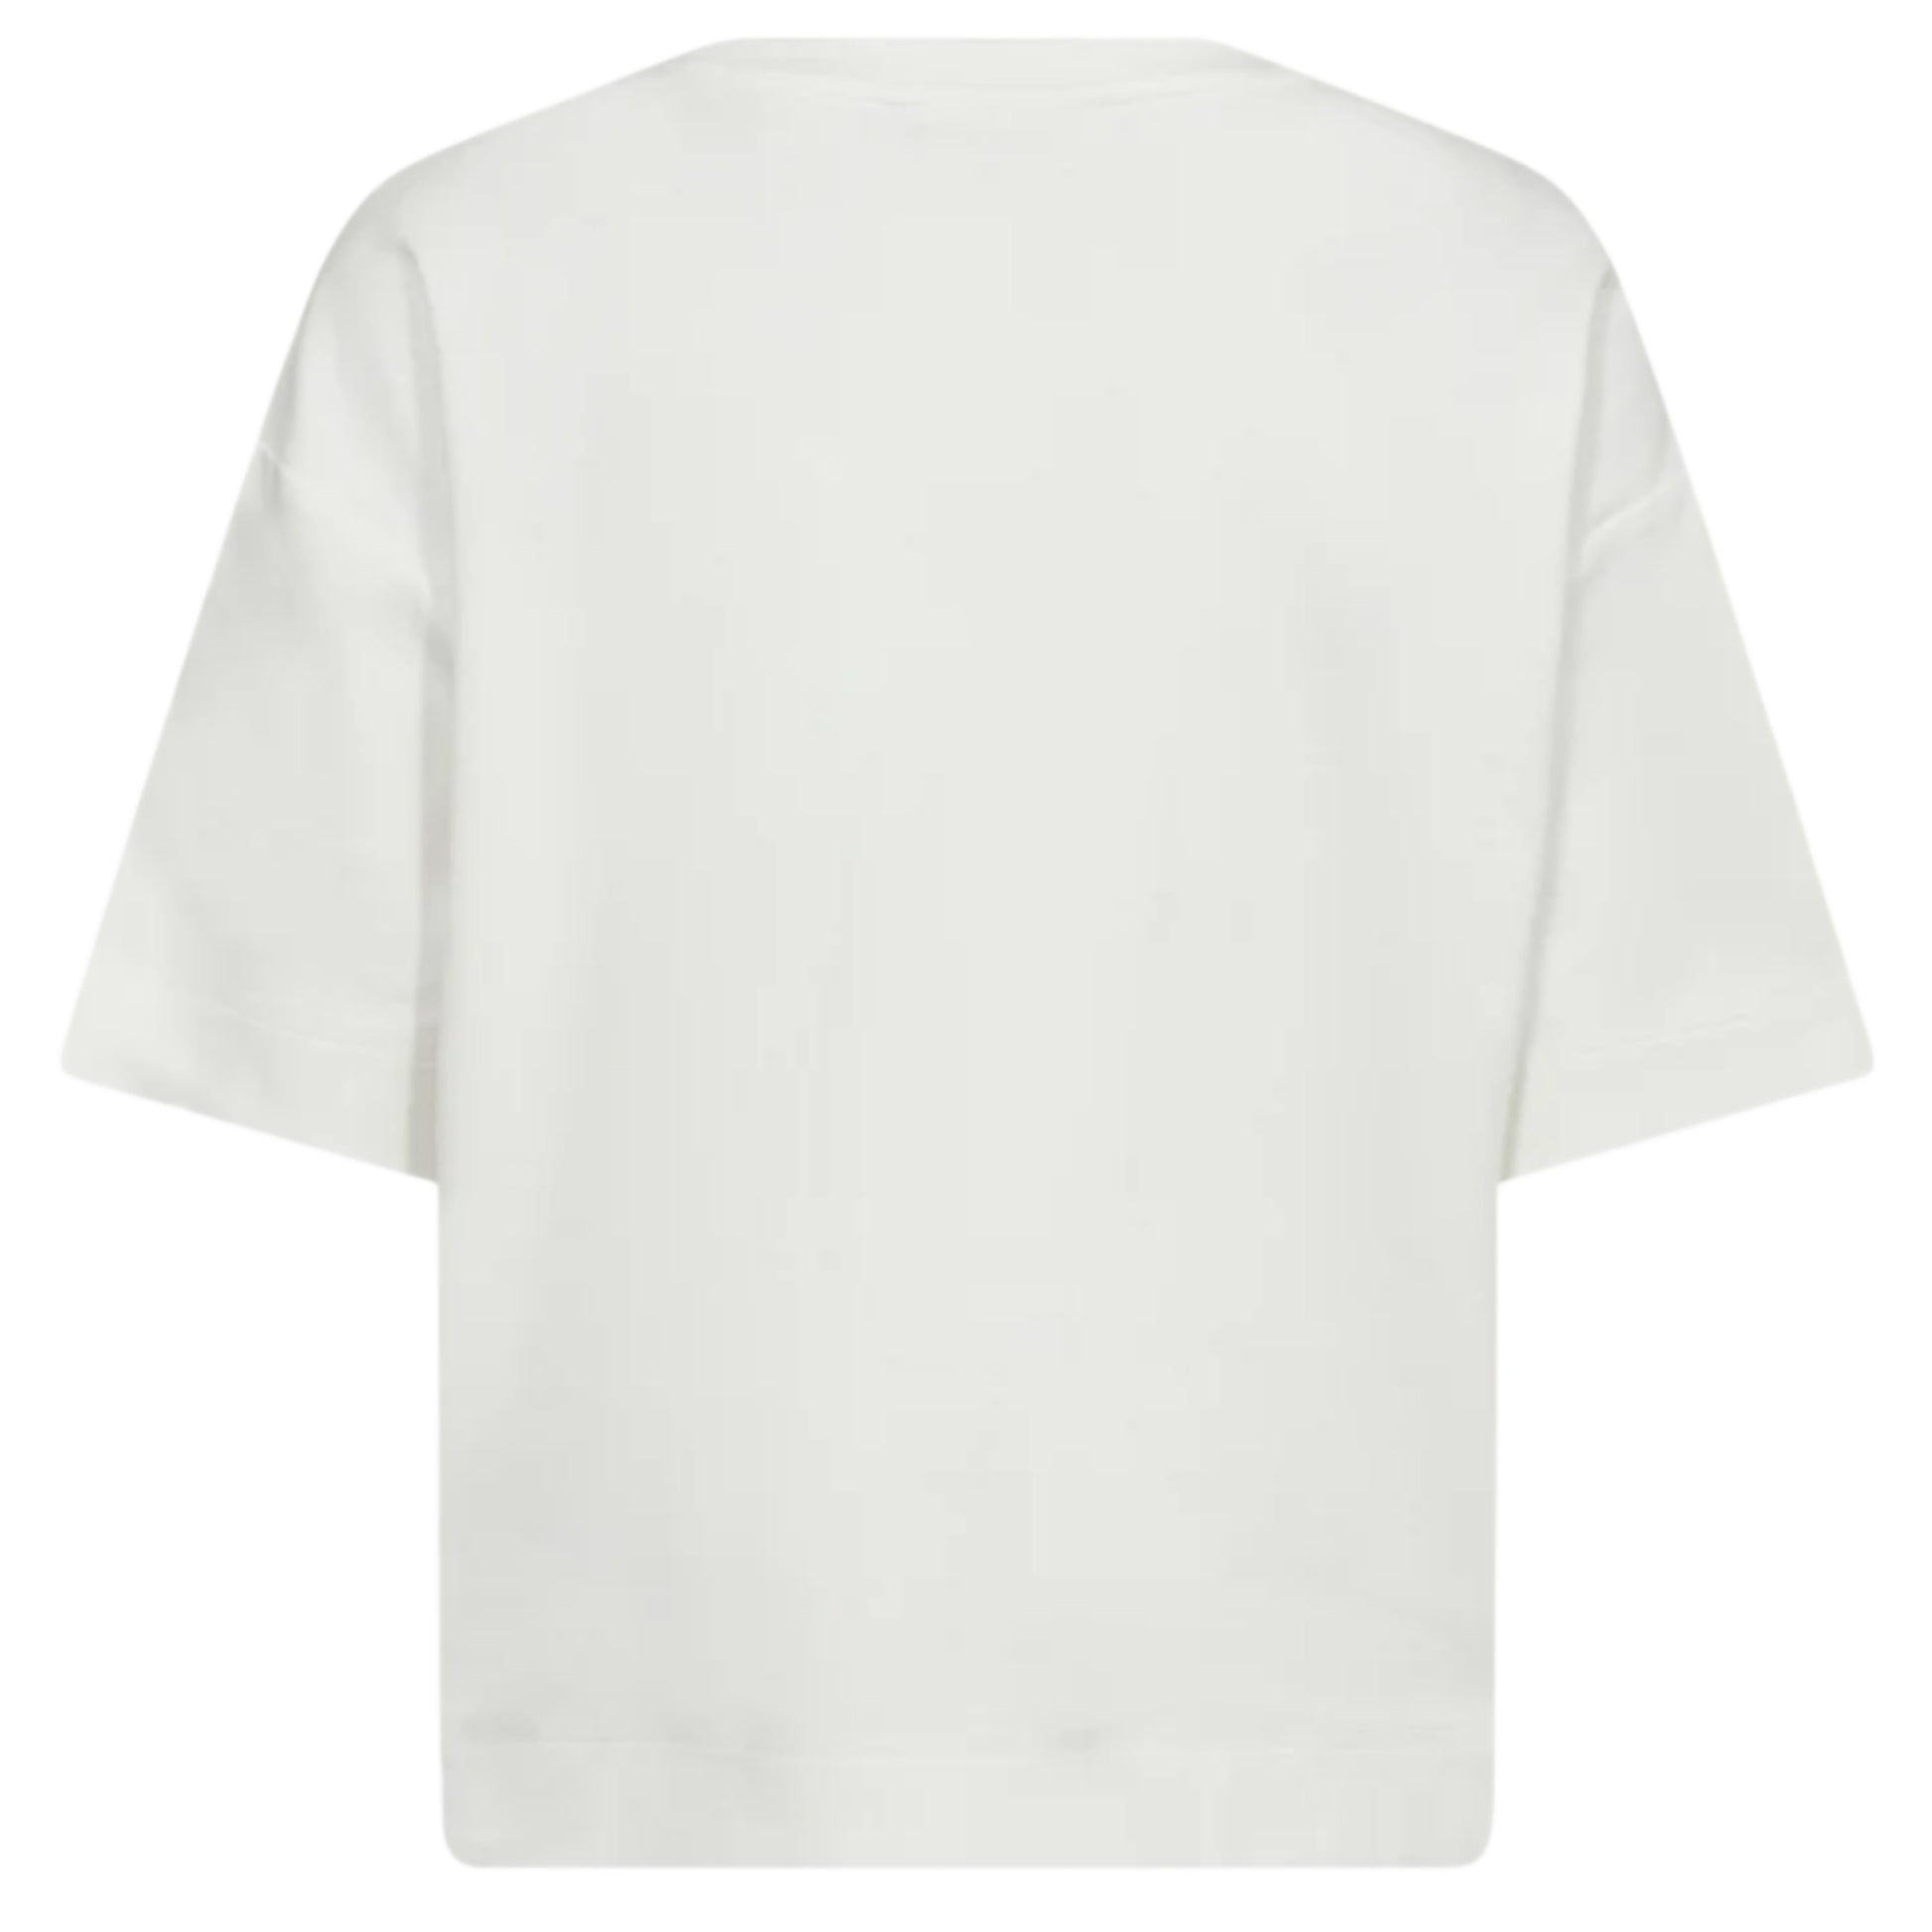 Copenhagen Muse T-shirt Offwhite - Peet kleding